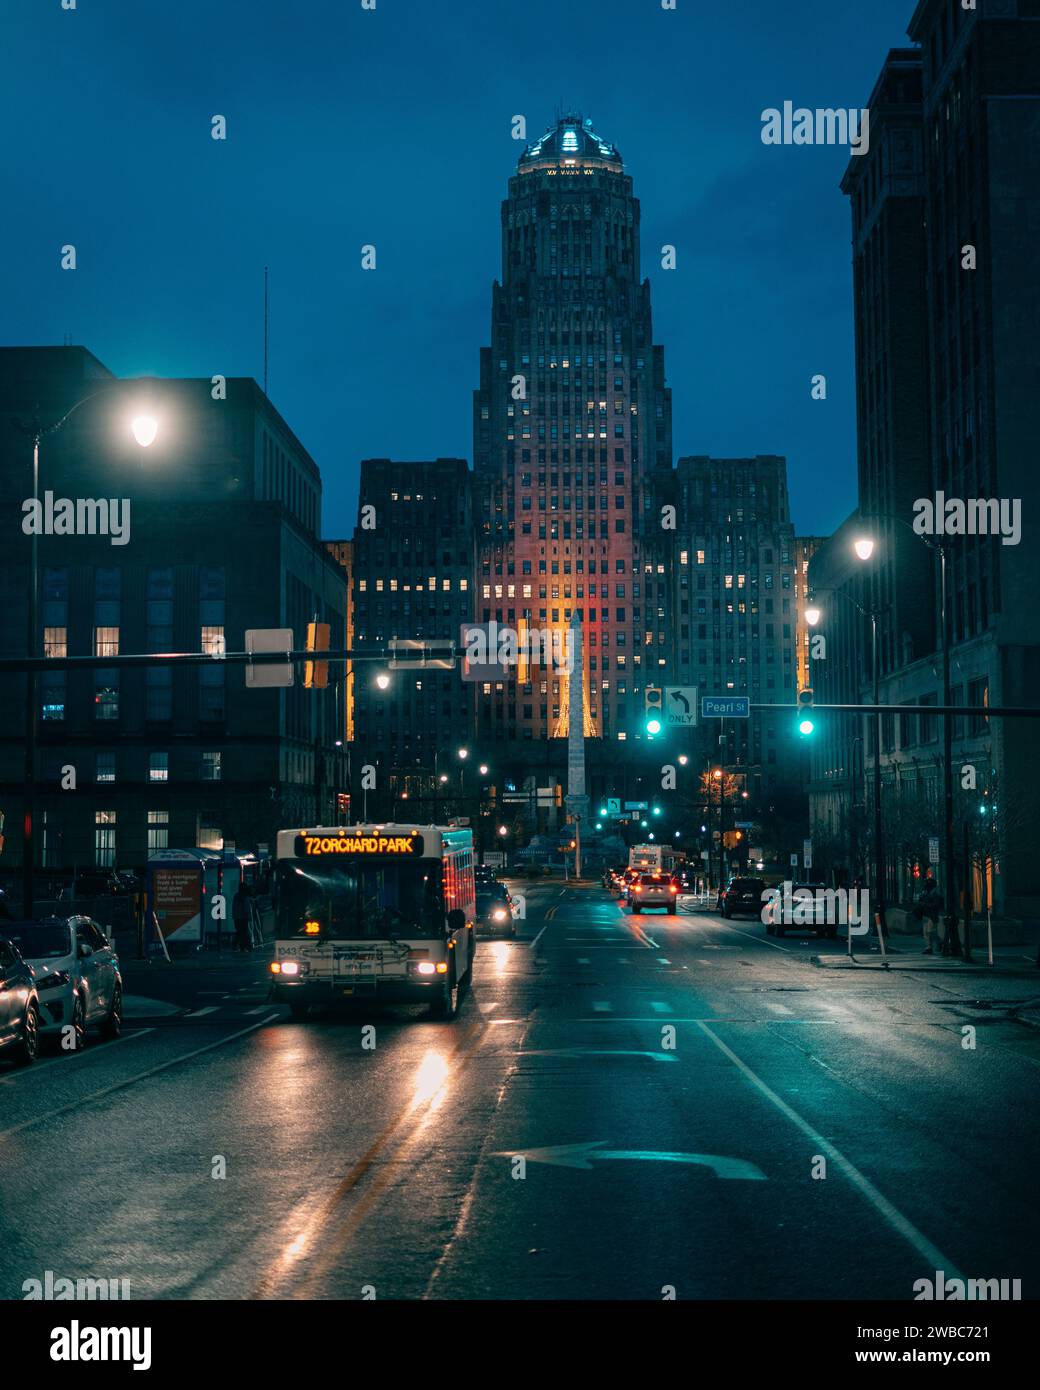 Buffalo City Hall at night in Buffalo, New York Stock Photo